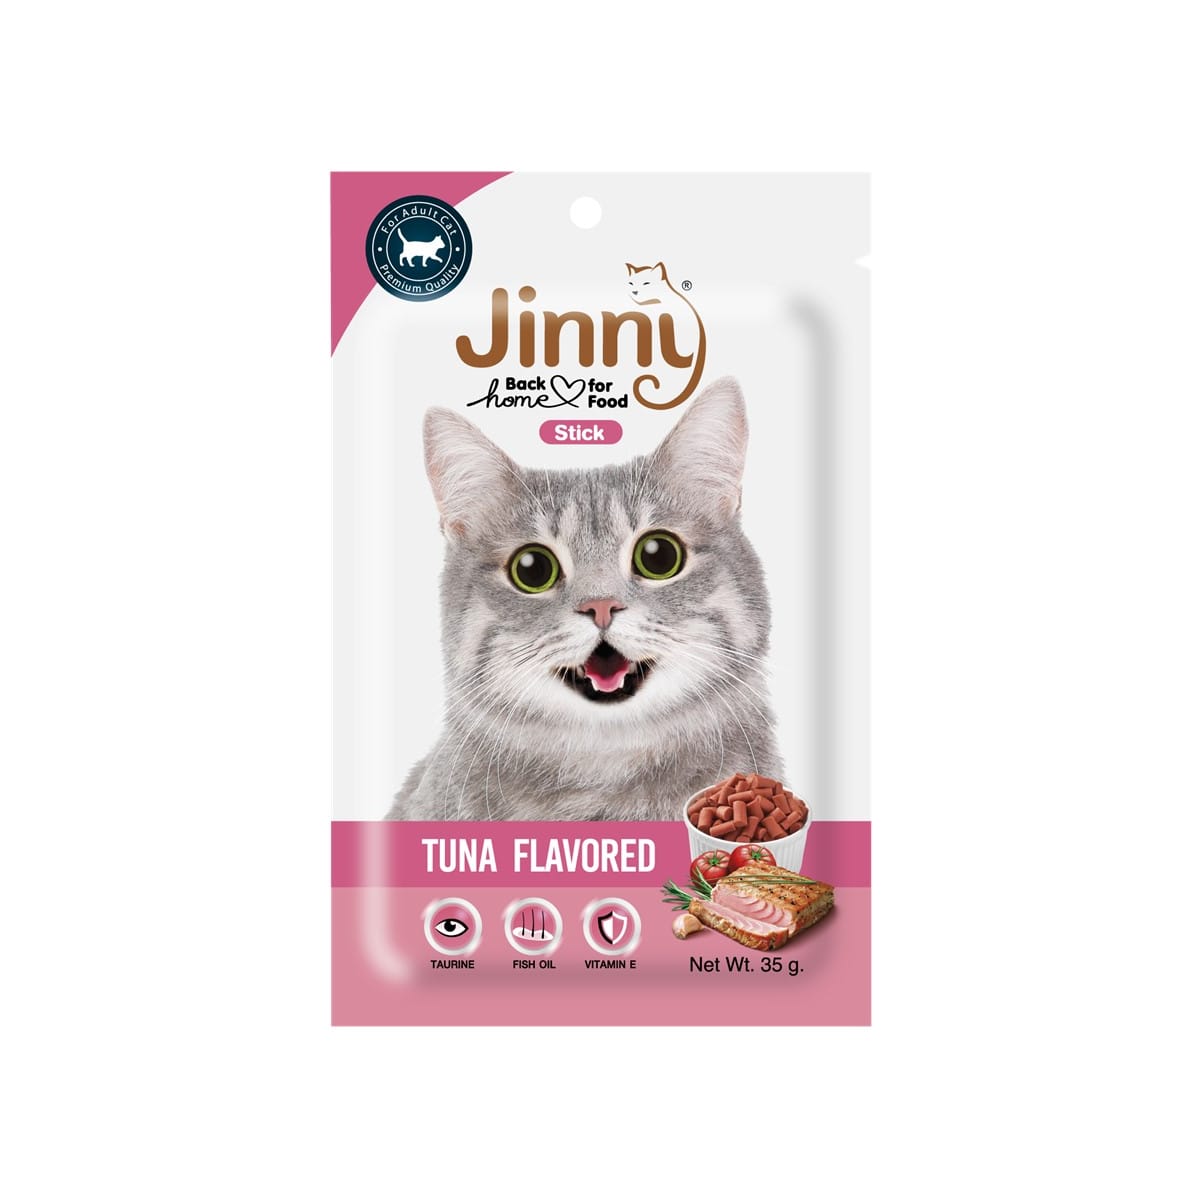 Jinny Stick ขนมแท่ง สำหรับแมว รสทูน่า 35 g_1